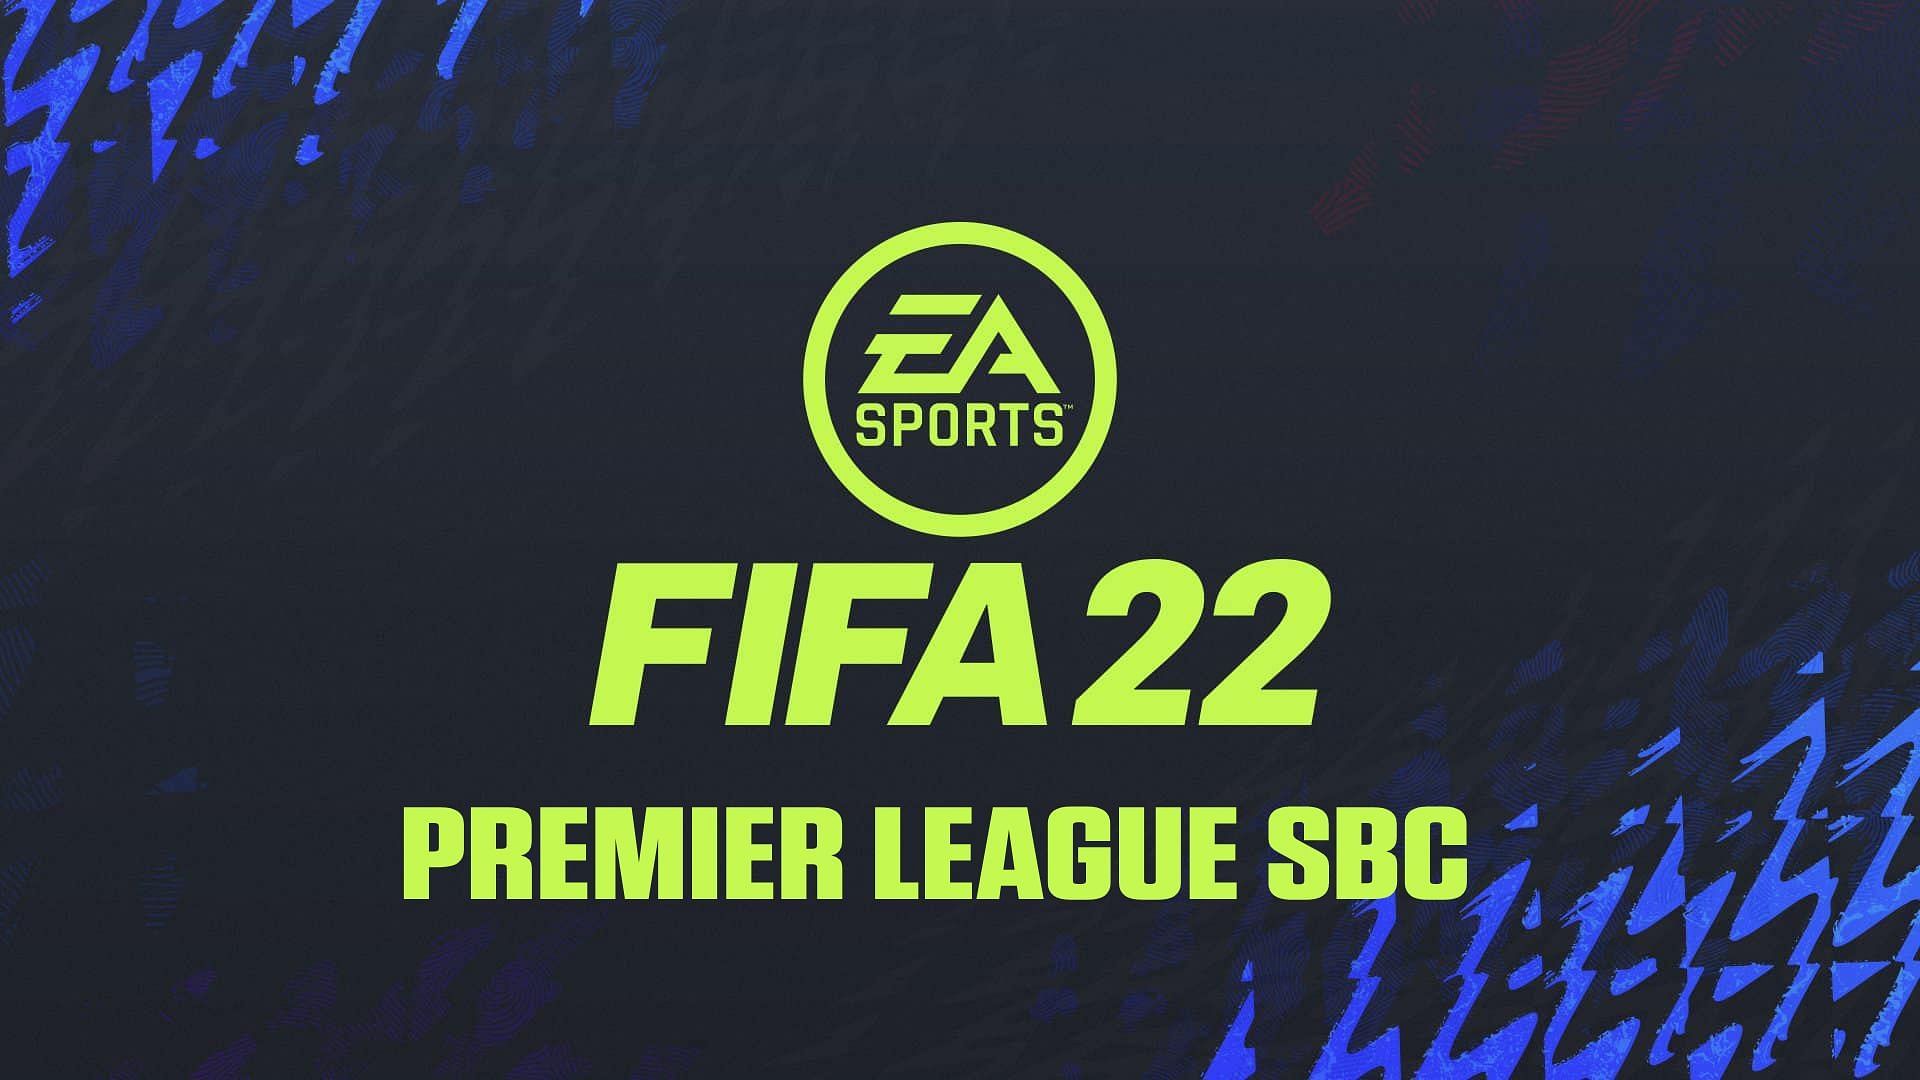 Premier League SBC on FIFA Ultimate Team (Image via Sportskeeda)